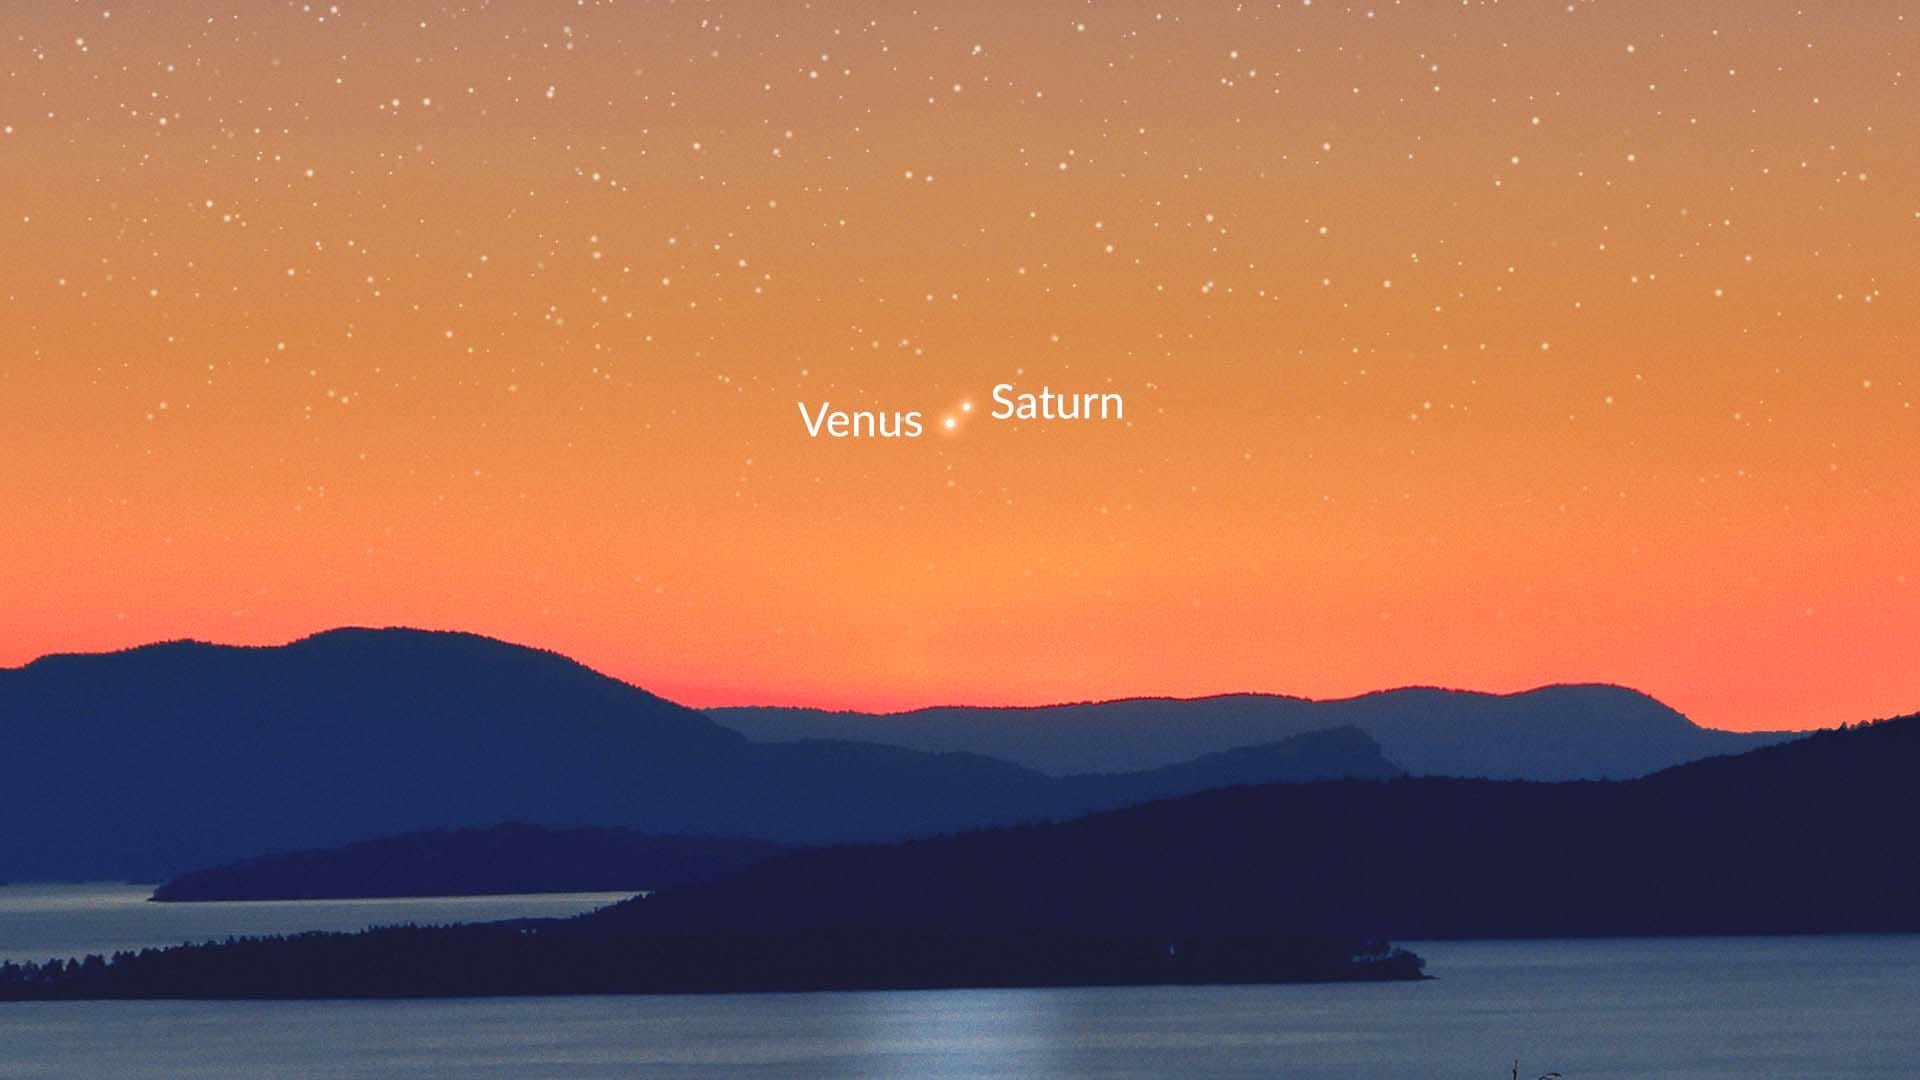 Venus-Saturn Conjunction in January 2023